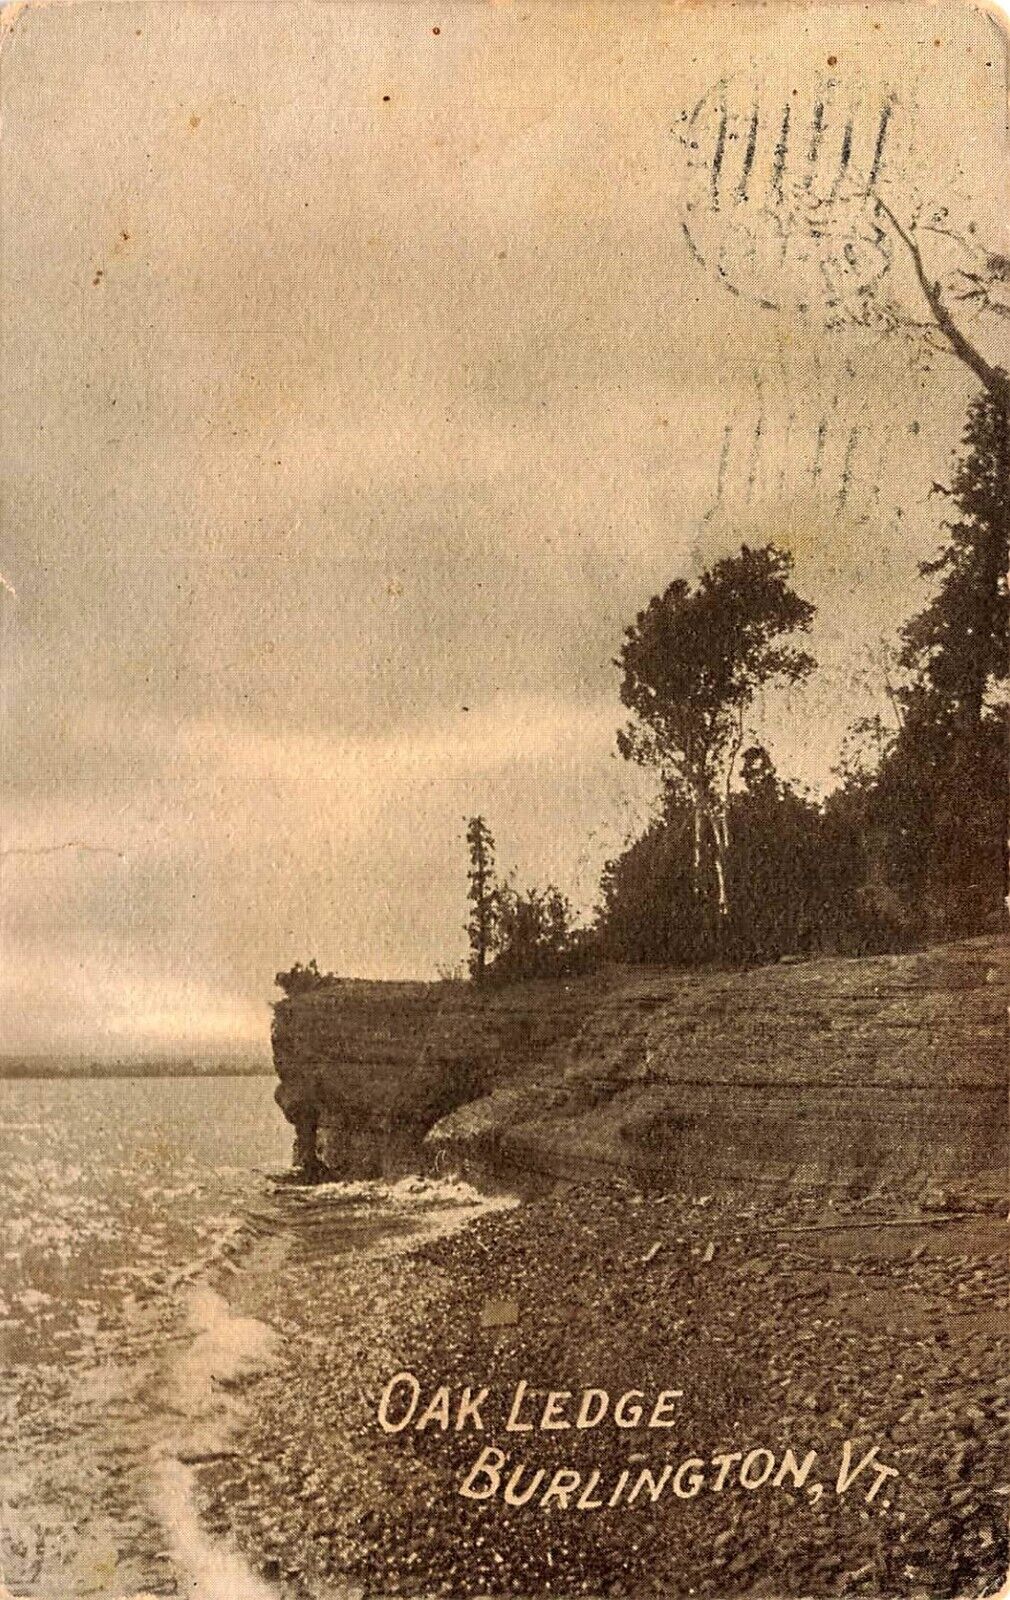 1911 VERMONT PHOTO POSTCARD: VIEW OF OAK LEDGE, BURLINGTON, VT